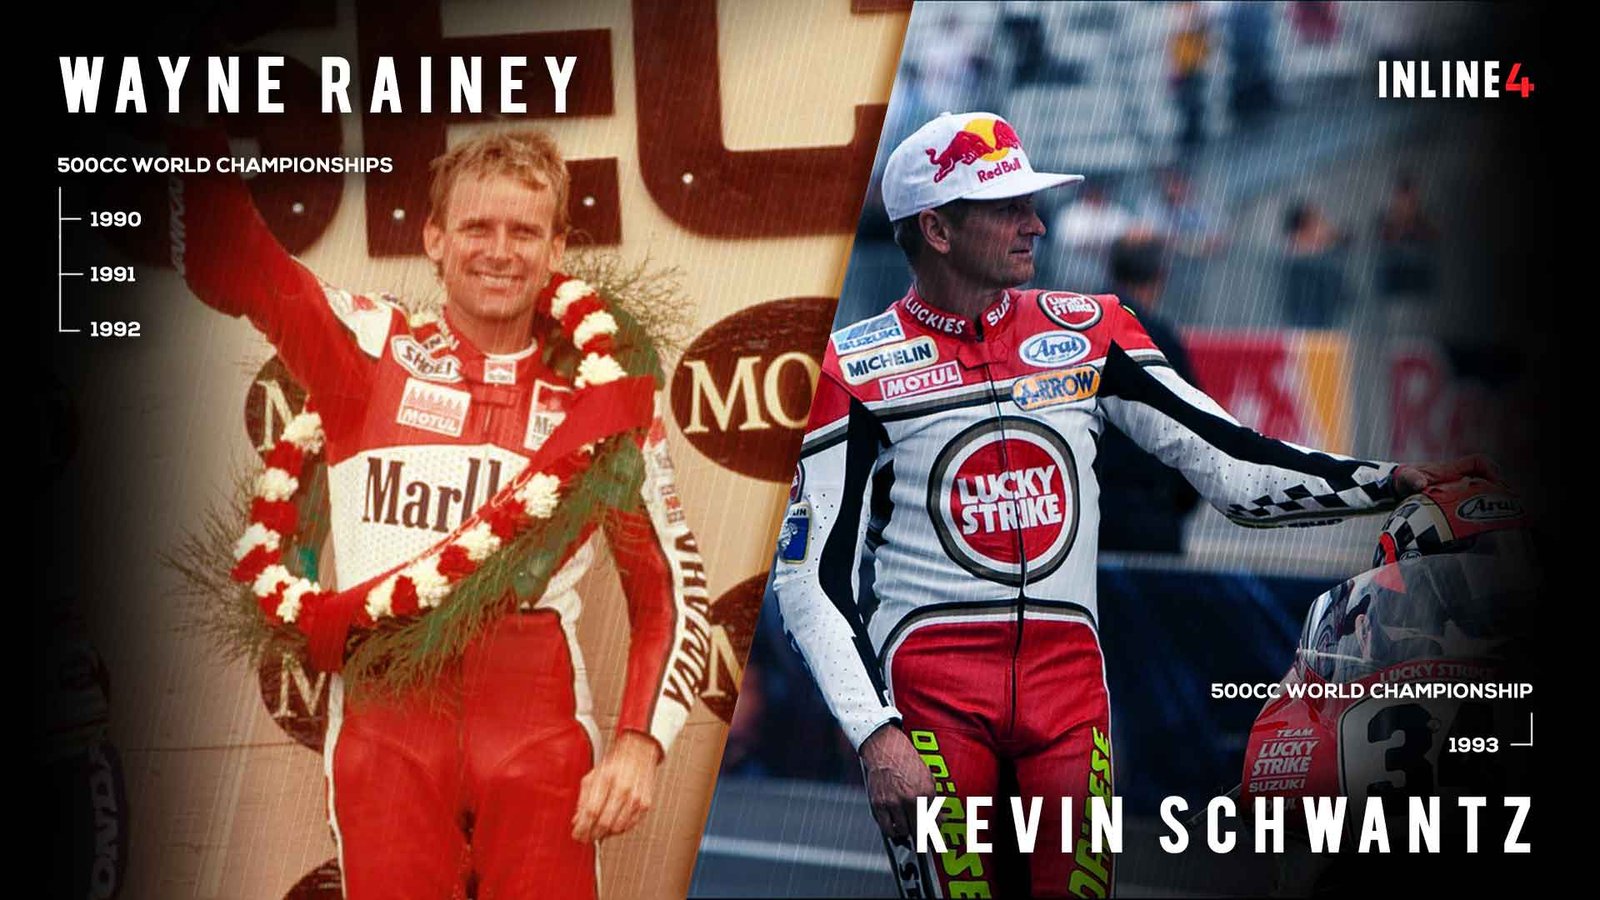 #waynerainey #kevinshwantz #legends #rivalry #race